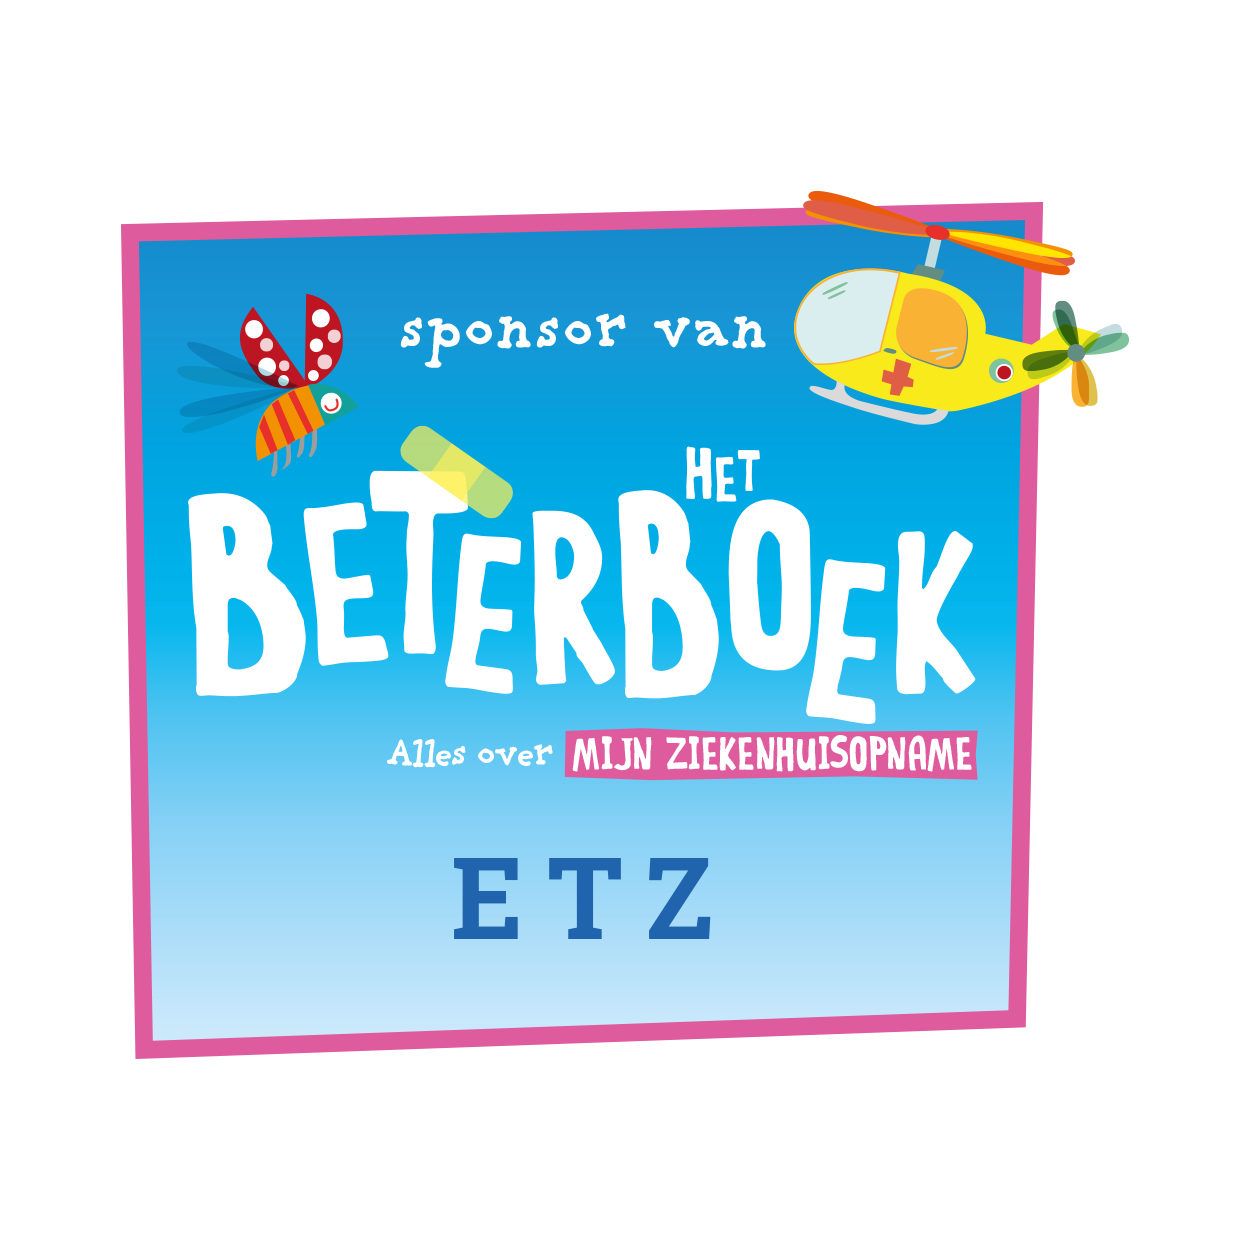 logo ETZ Beterboek